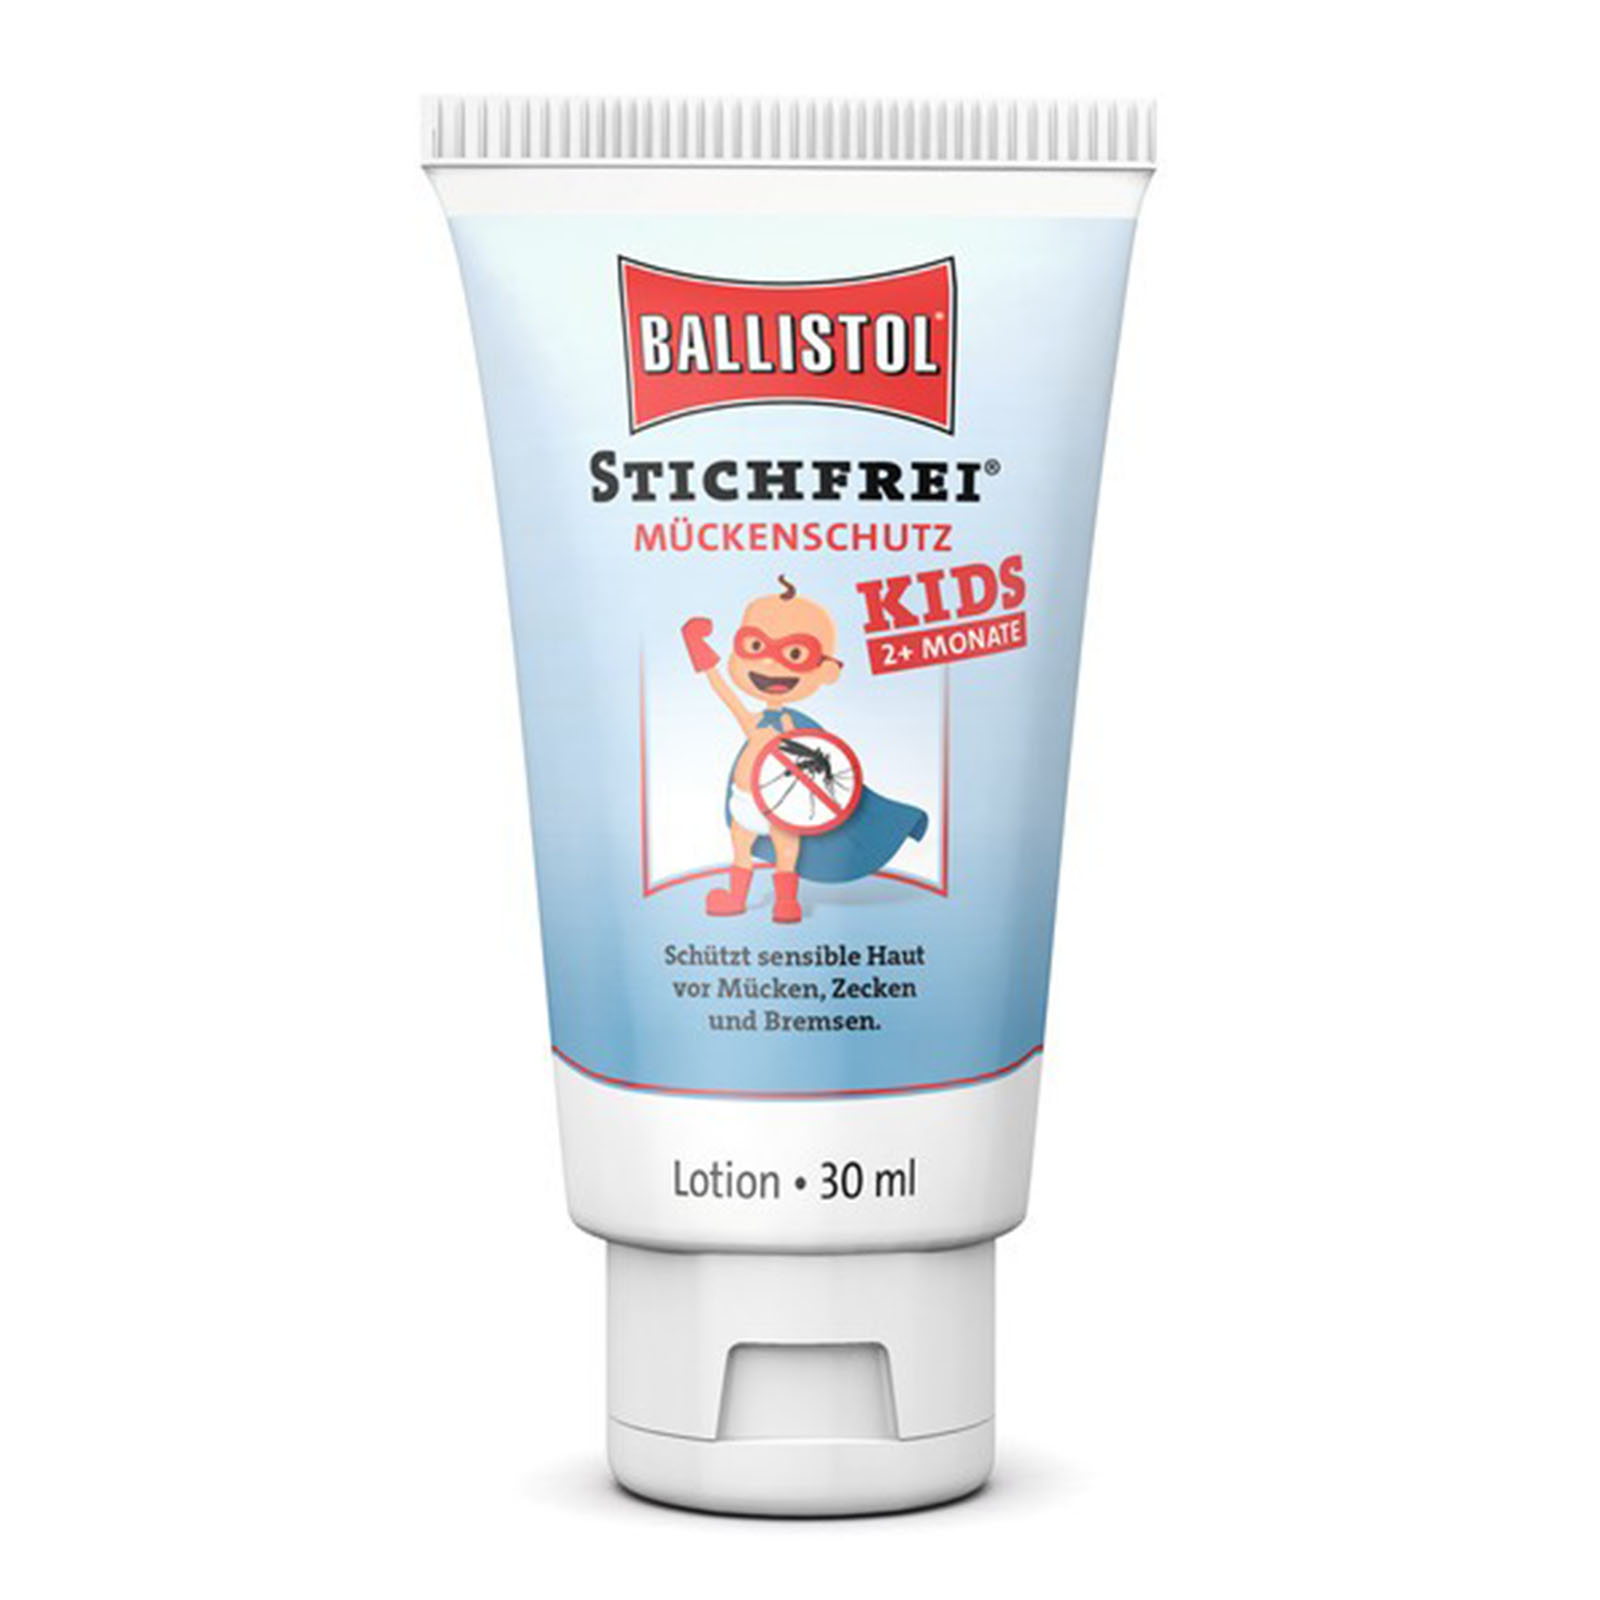 Ballistol Mückenschutz Stichfrei Kids 30ml Tube